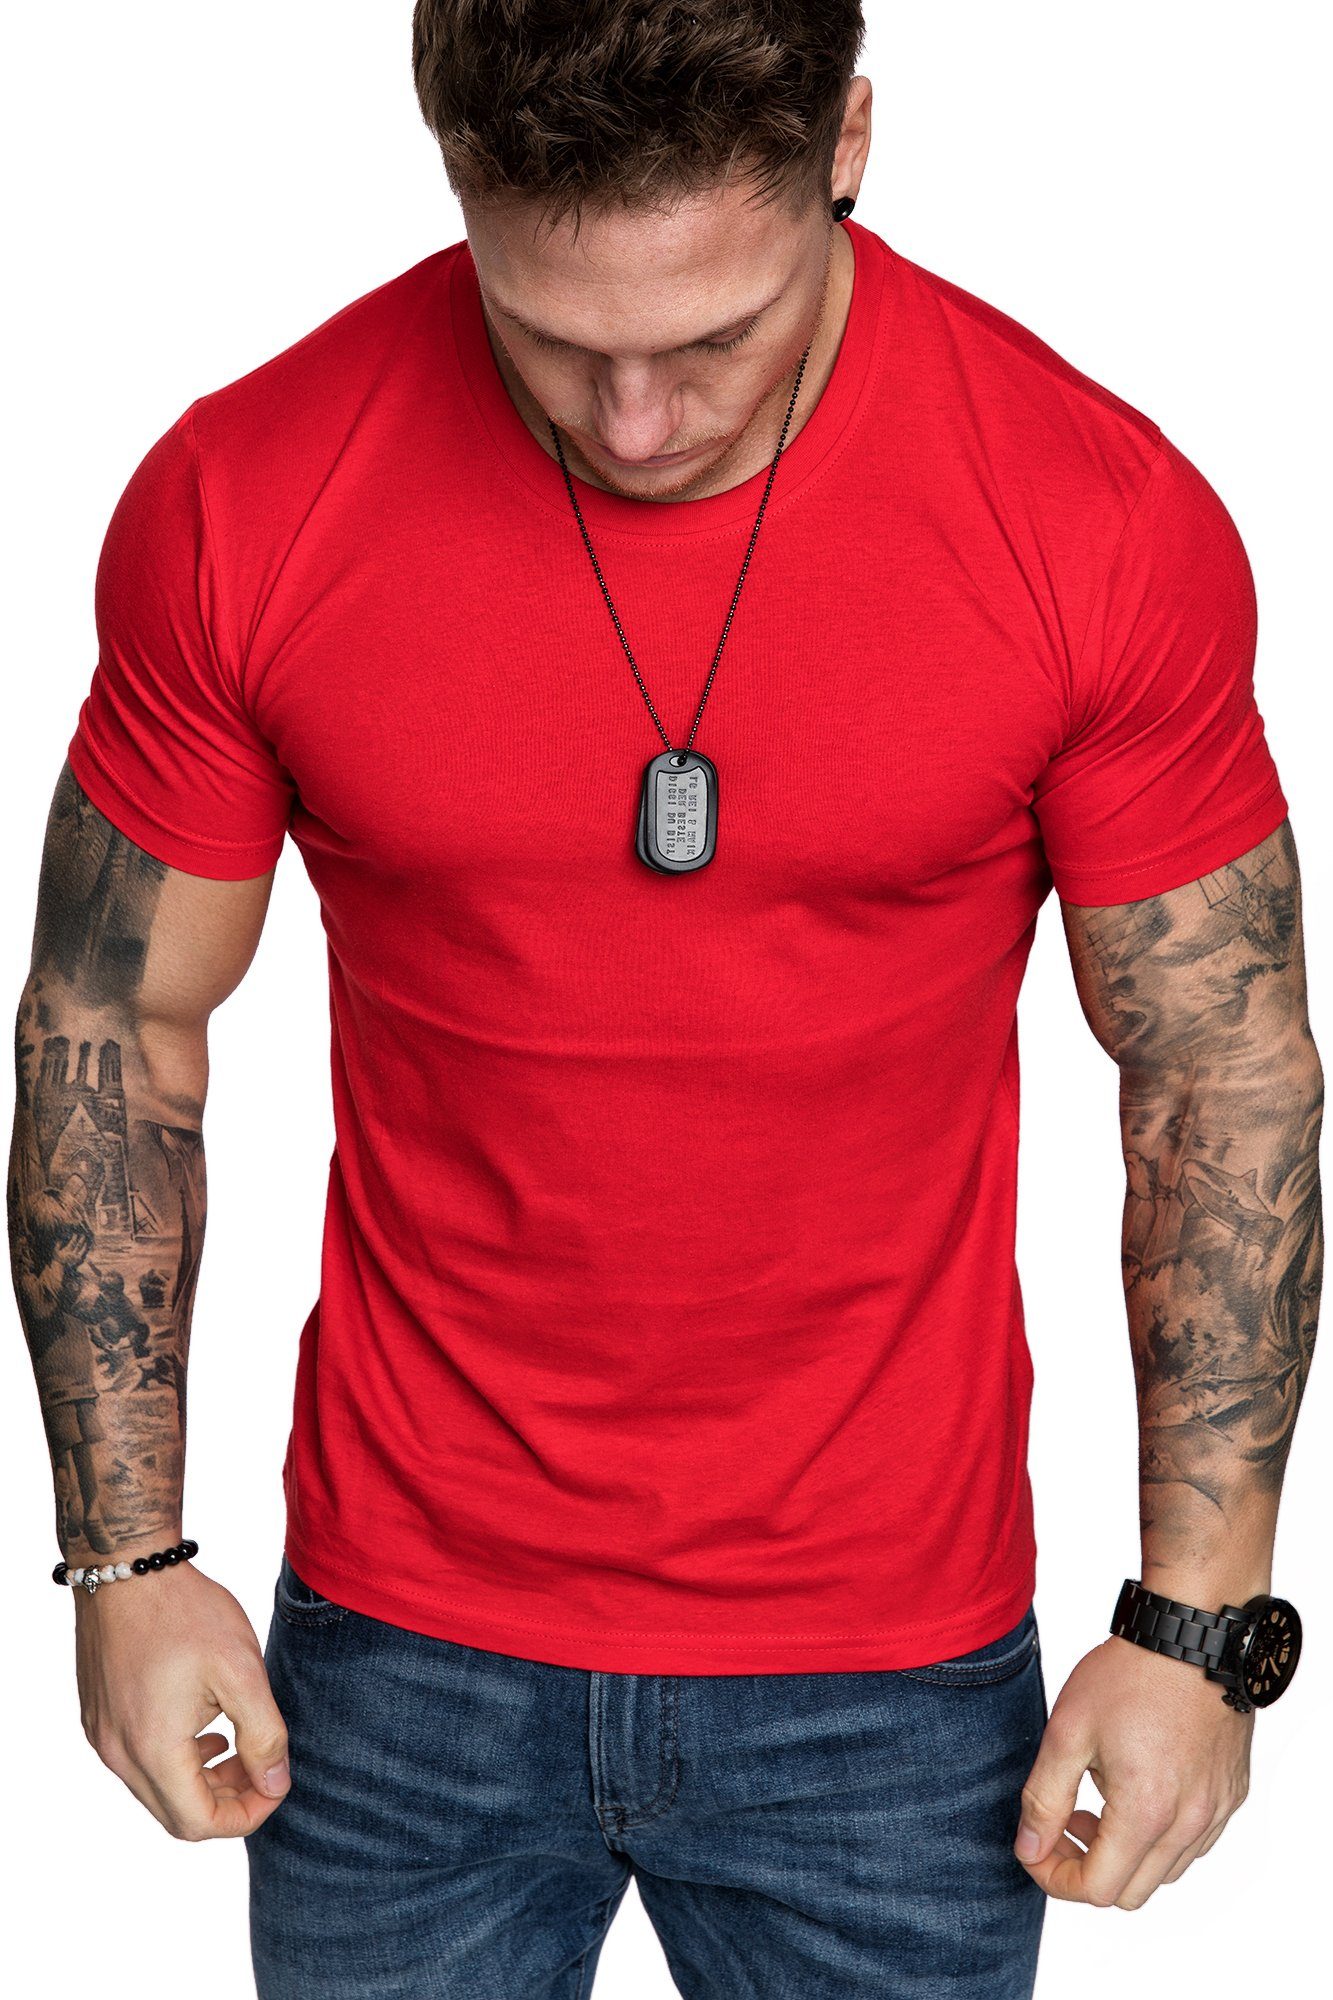 T-Shirt Einfarbig Basic Herren Neck mit Rundhalsausschnitt T-Shirt LANCASTER Amaci&Sons Vintage Shirt Rot Crew Rundhalsausschnitt Basic